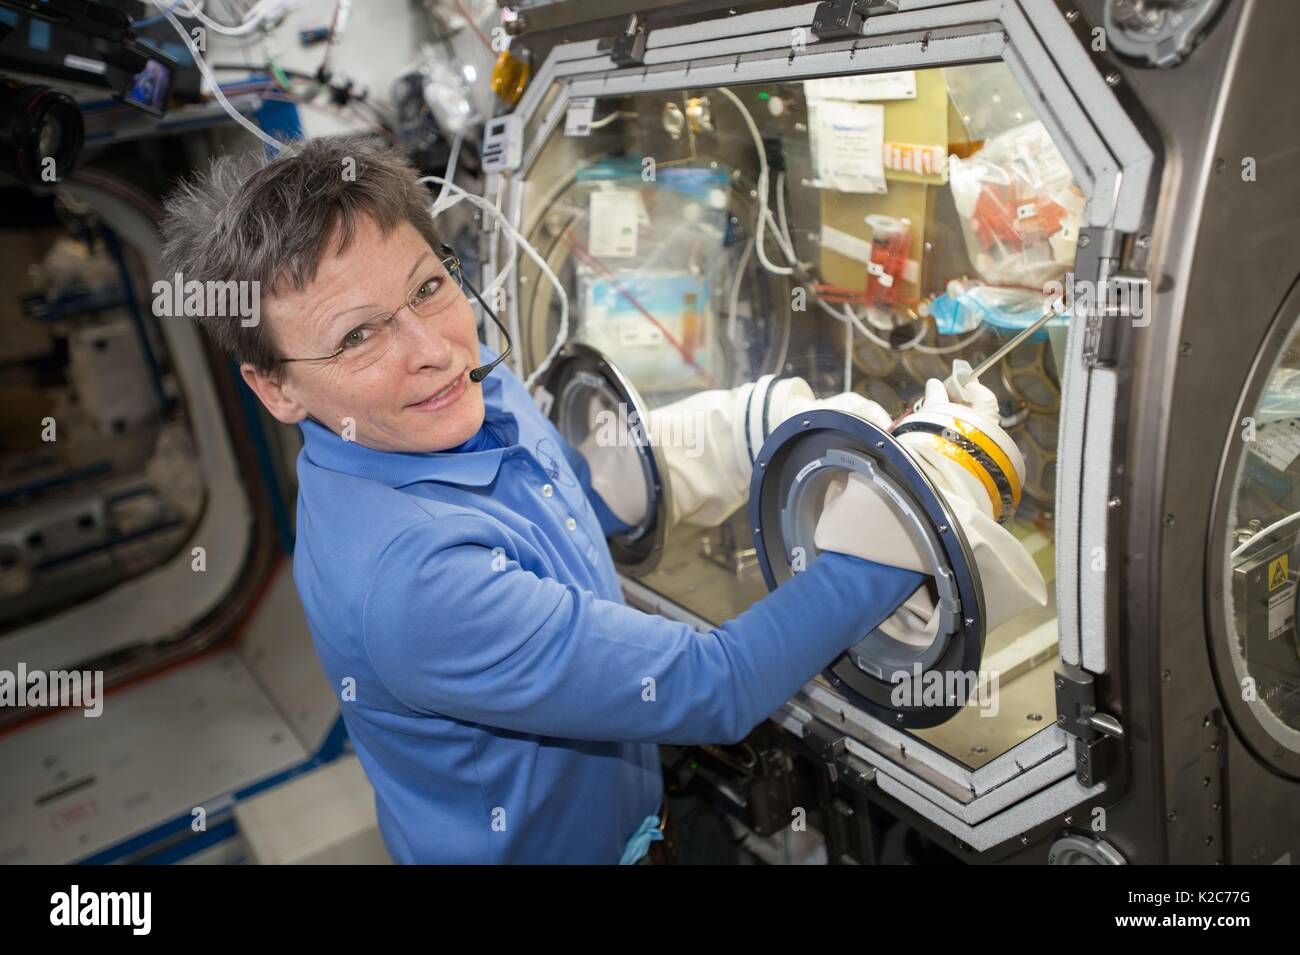 Die NASA ISS Expedition 51 prime Besatzungsmitglied amerikanische Astronautin Peggy Whitson arbeitet auf ein Experiment in den USA Labor Destiny Handschuhkasten für Schwerelosigkeitsforschung Mai 2, 2017 in der Erdumlaufbahn. Stockfoto